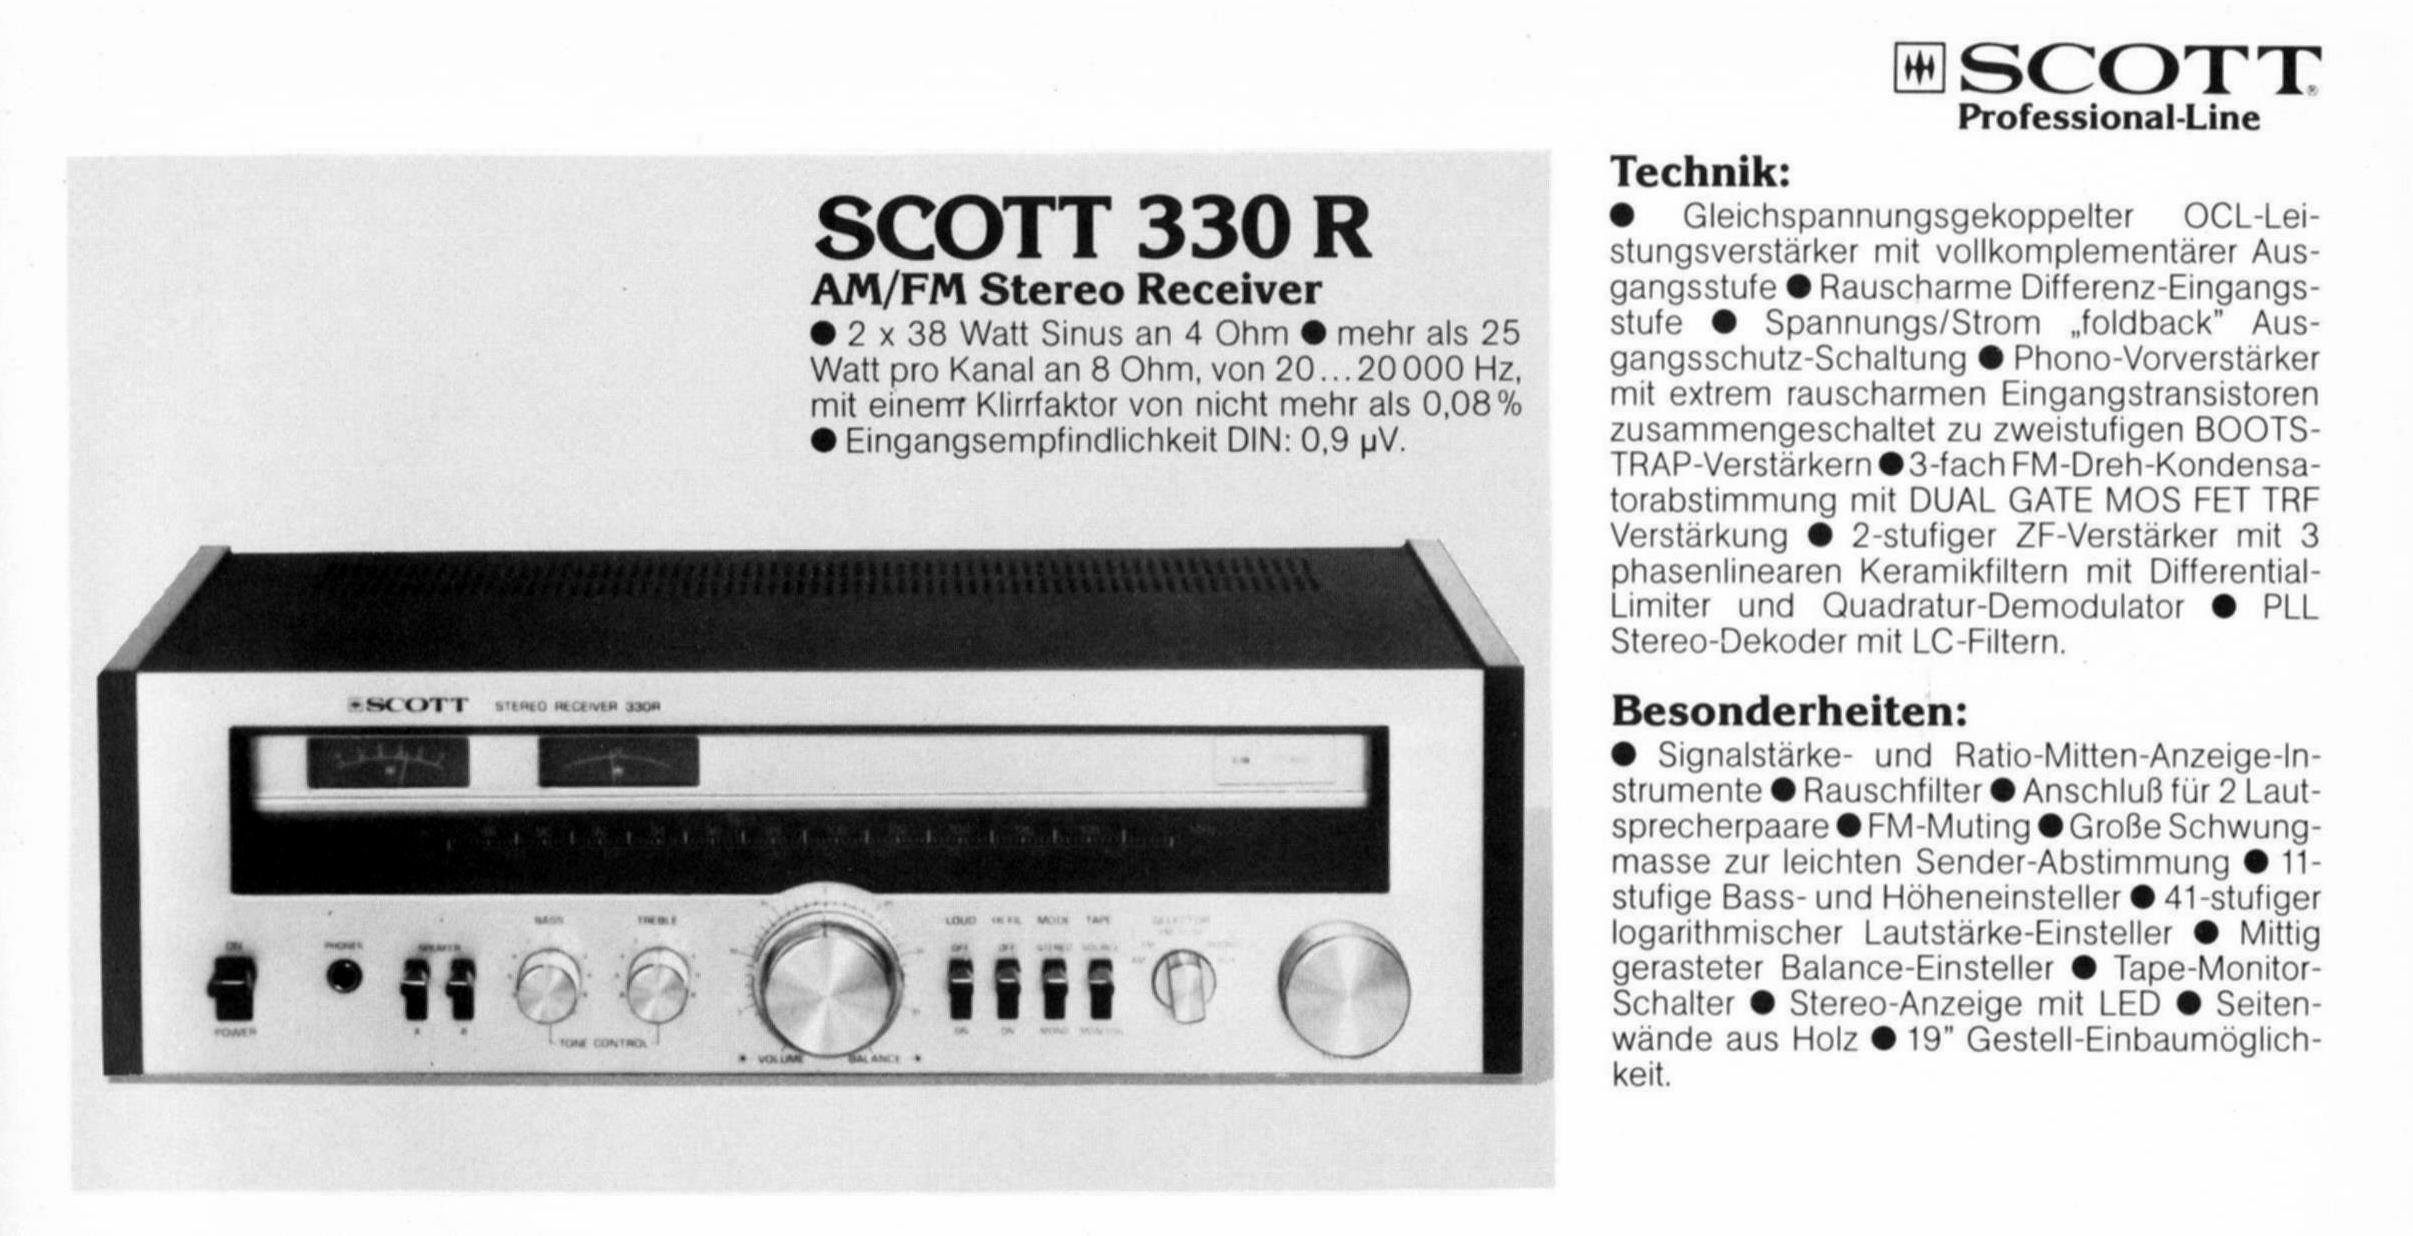 Scott 330 R-Prospekt-1979.jpg